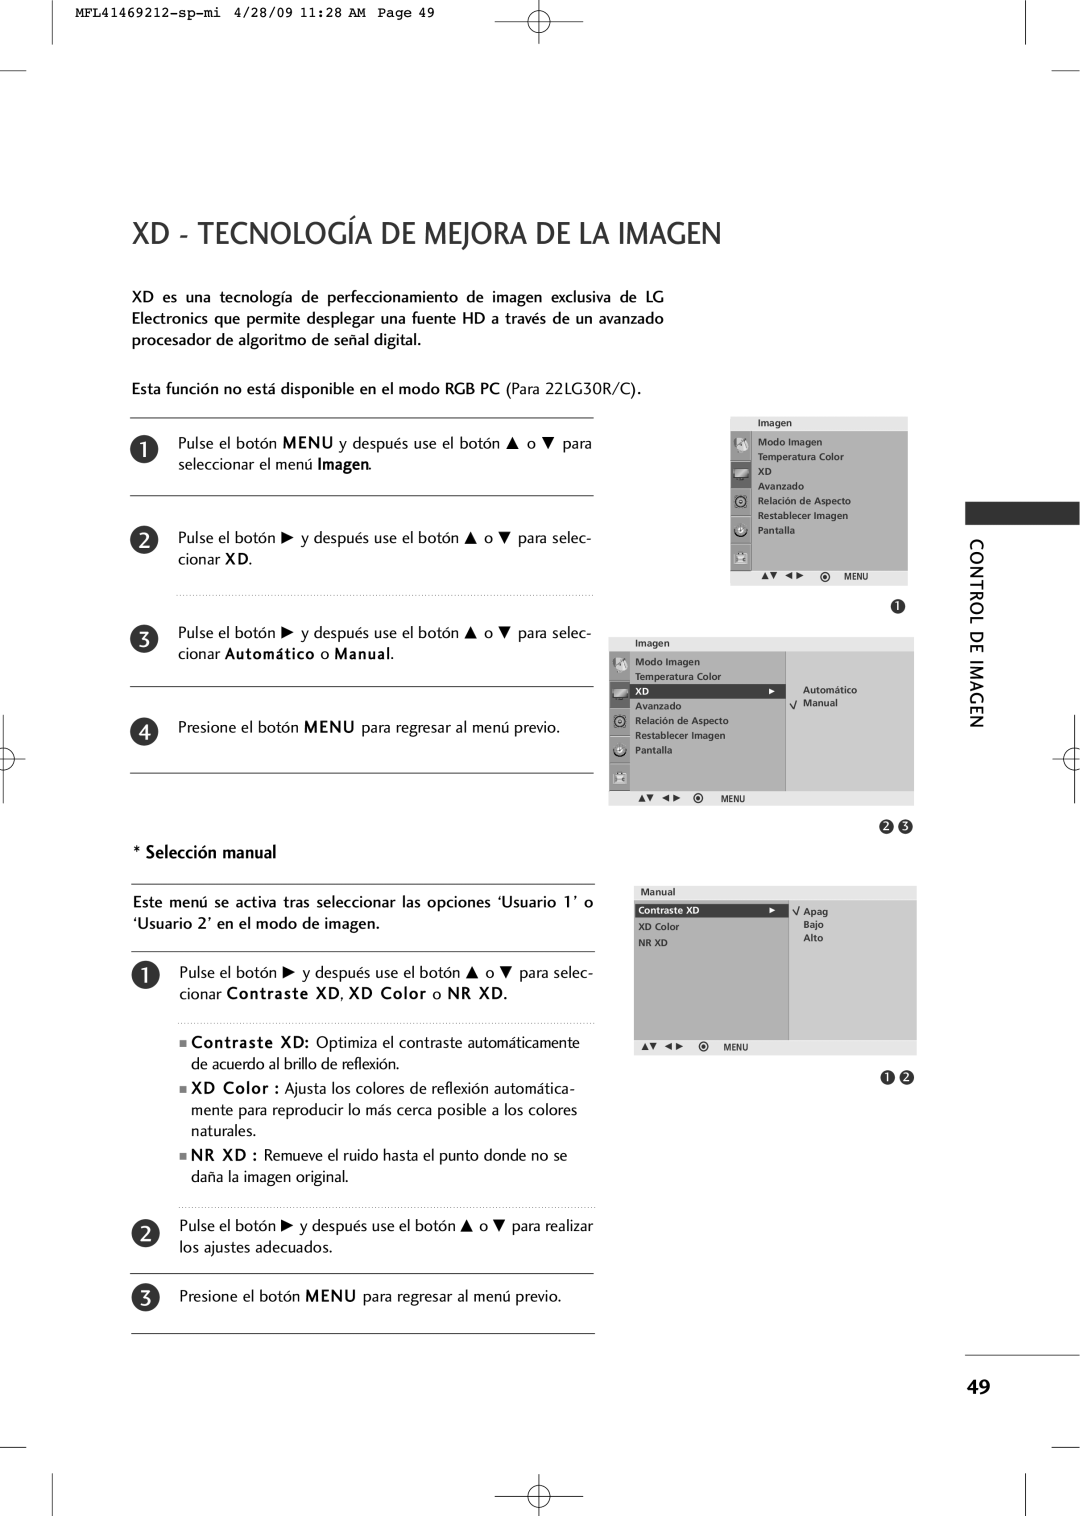 LG Electronics 2230R-MA Xd - Tecnología De Mejora De La Imagen, Selección manual, cionar Automático o Manual 